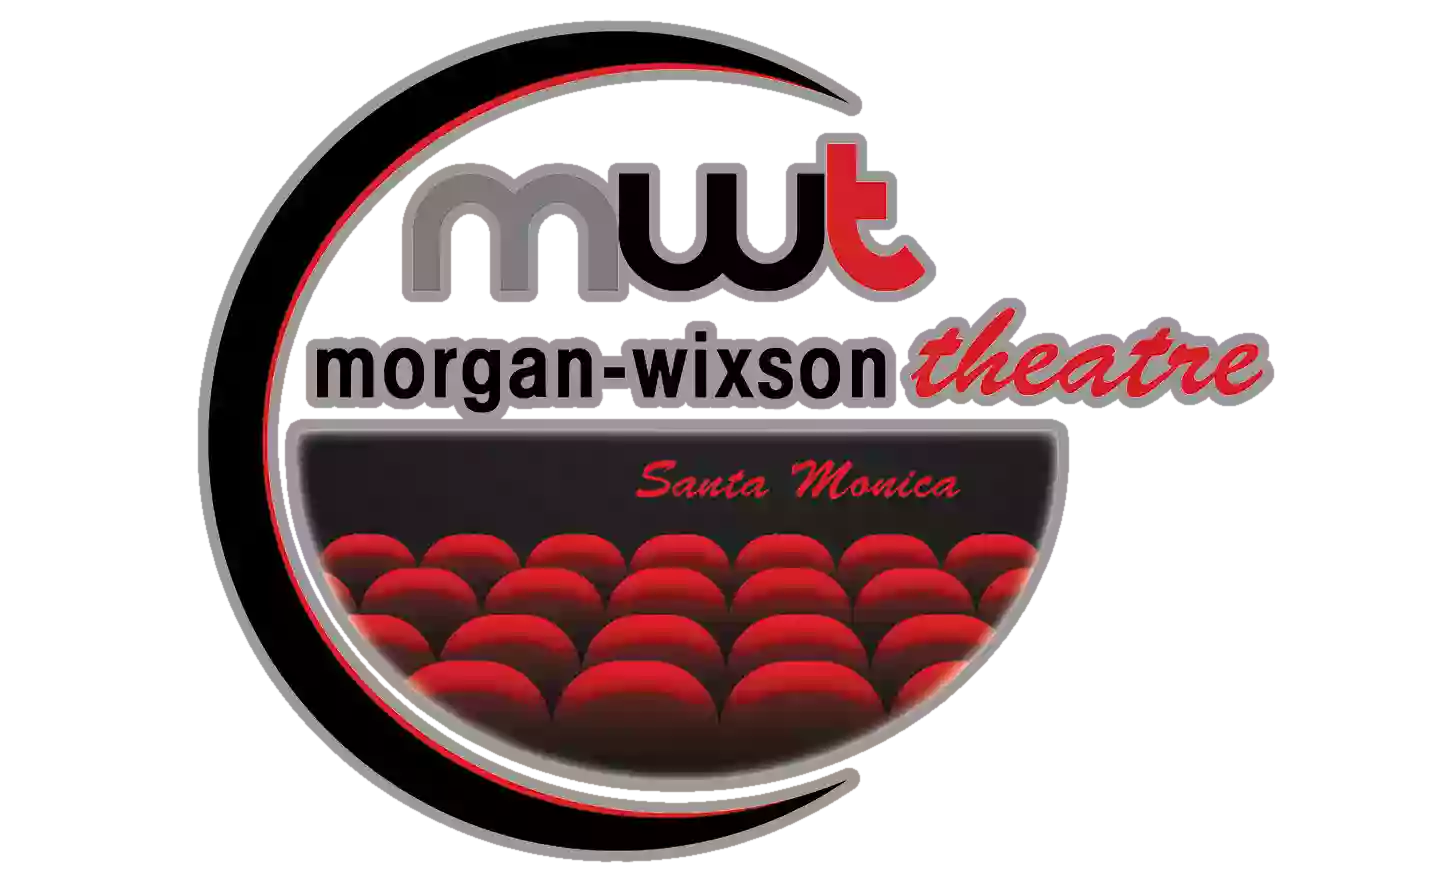 Morgan-Wixson Theatre